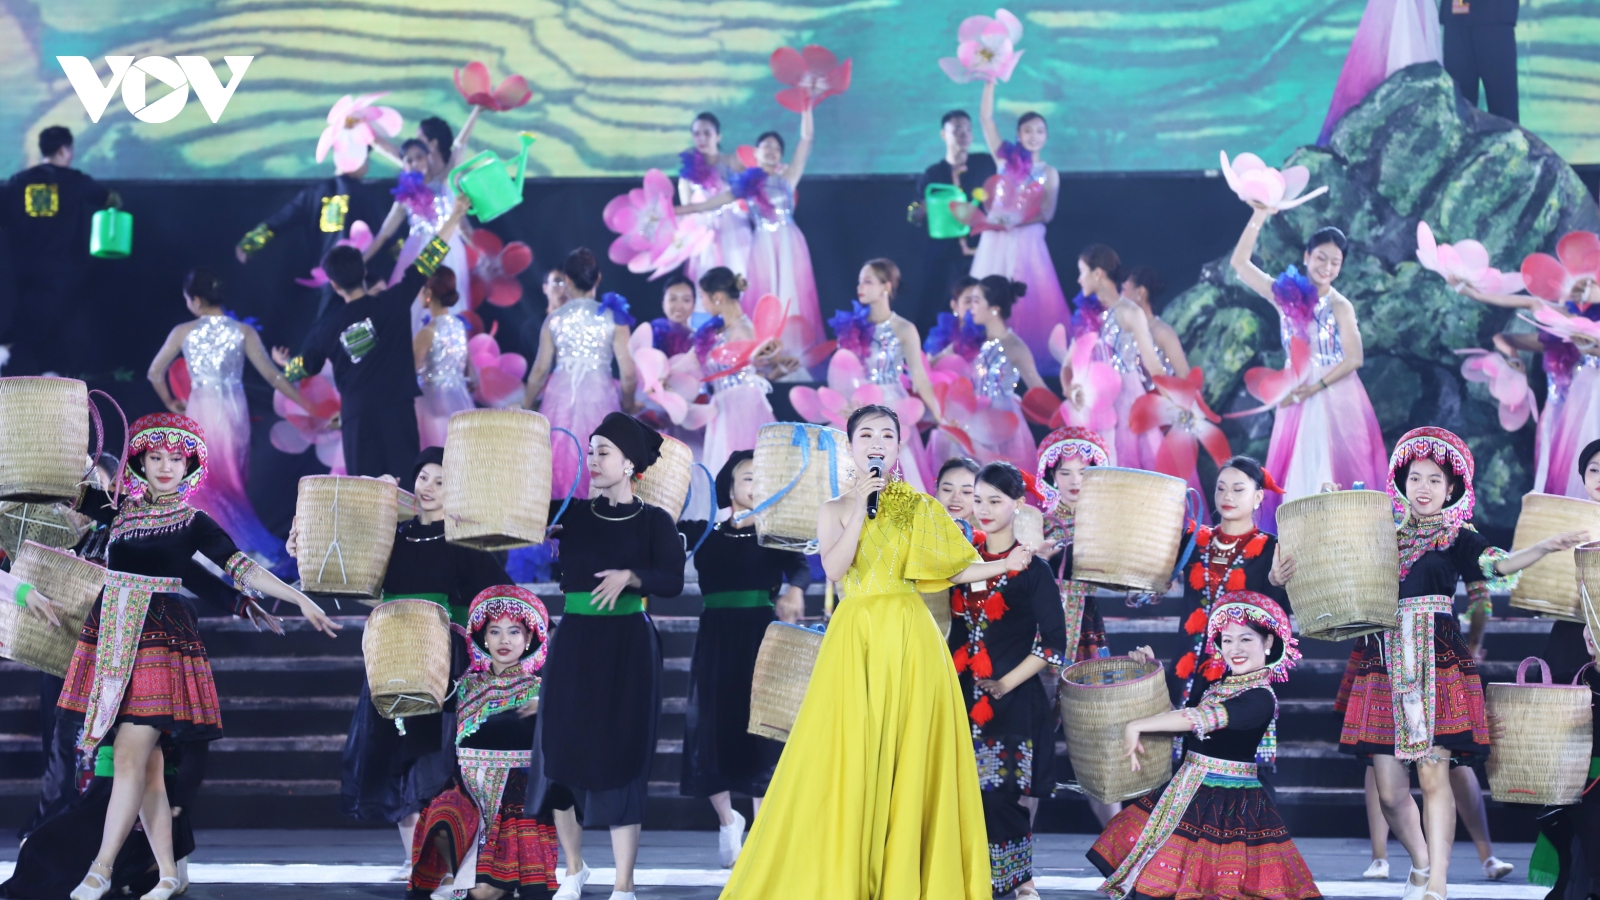 Lào Cai tổ chức chương trình đặc biệt Kỷ niệm 120 năm du lịch Sa Pa